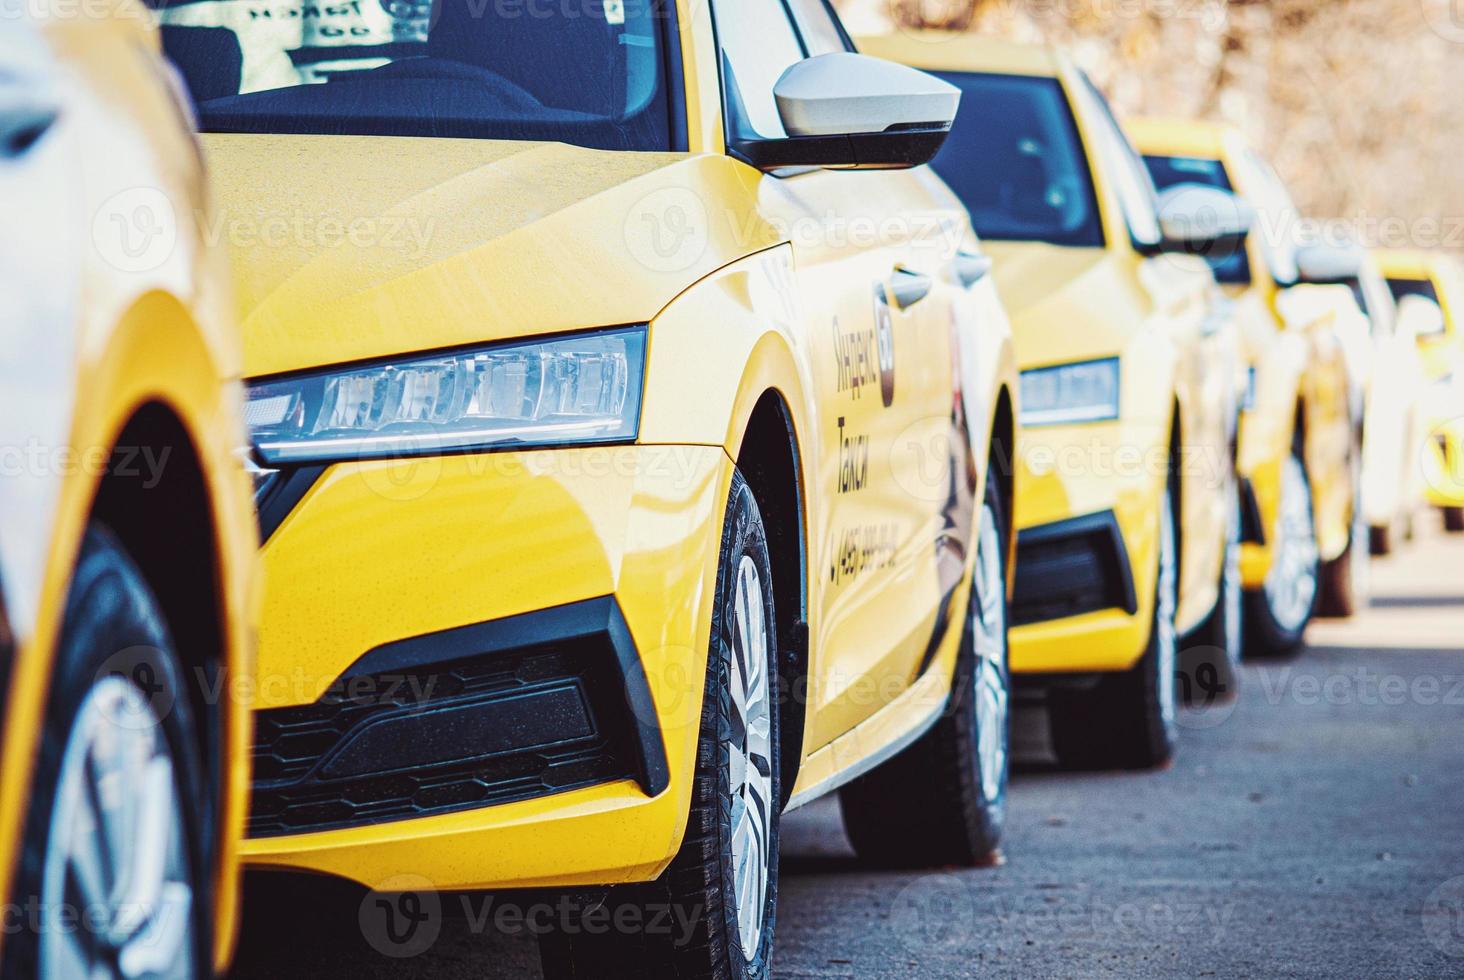 Yandex Taxi amarillo carros estacionado en un fila, Moscú, 31 oct 2021 foto